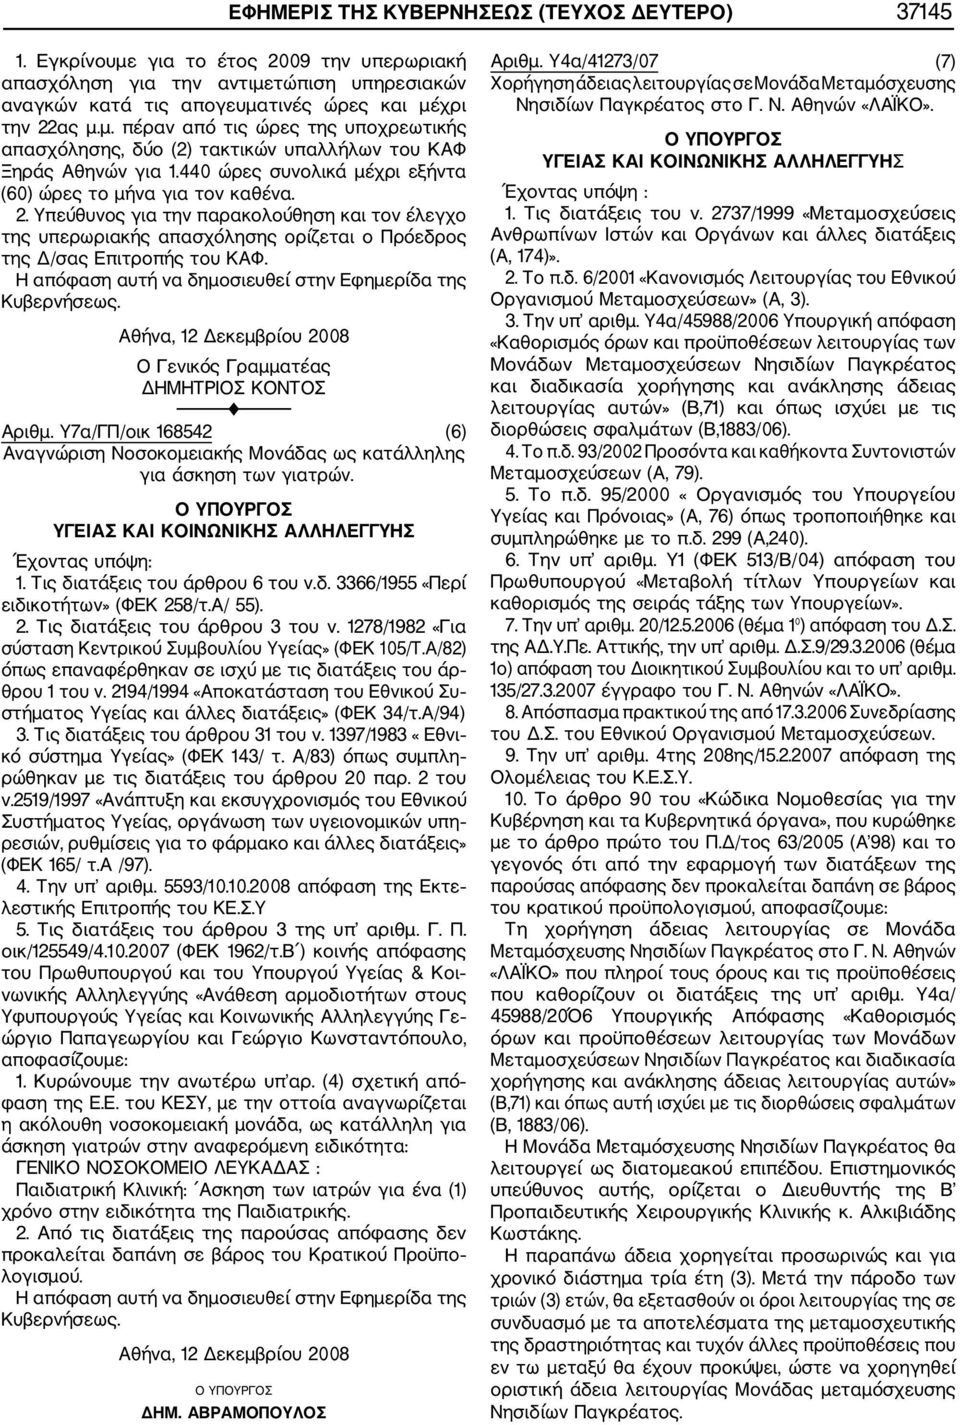 Αθήνα, 12 Δεκεμβρίου 2008 Ο Γενικός Γραμματέας ΔΗΜΗΤΡΙΟΣ ΚΟΝΤΟΣ Αριθμ. Υ7α/ΓΠ/οικ 168542 (6) Αναγνώριση Νοσοκομειακής Μονάδας ως κατάλληλης για άσκηση των γιατρών.